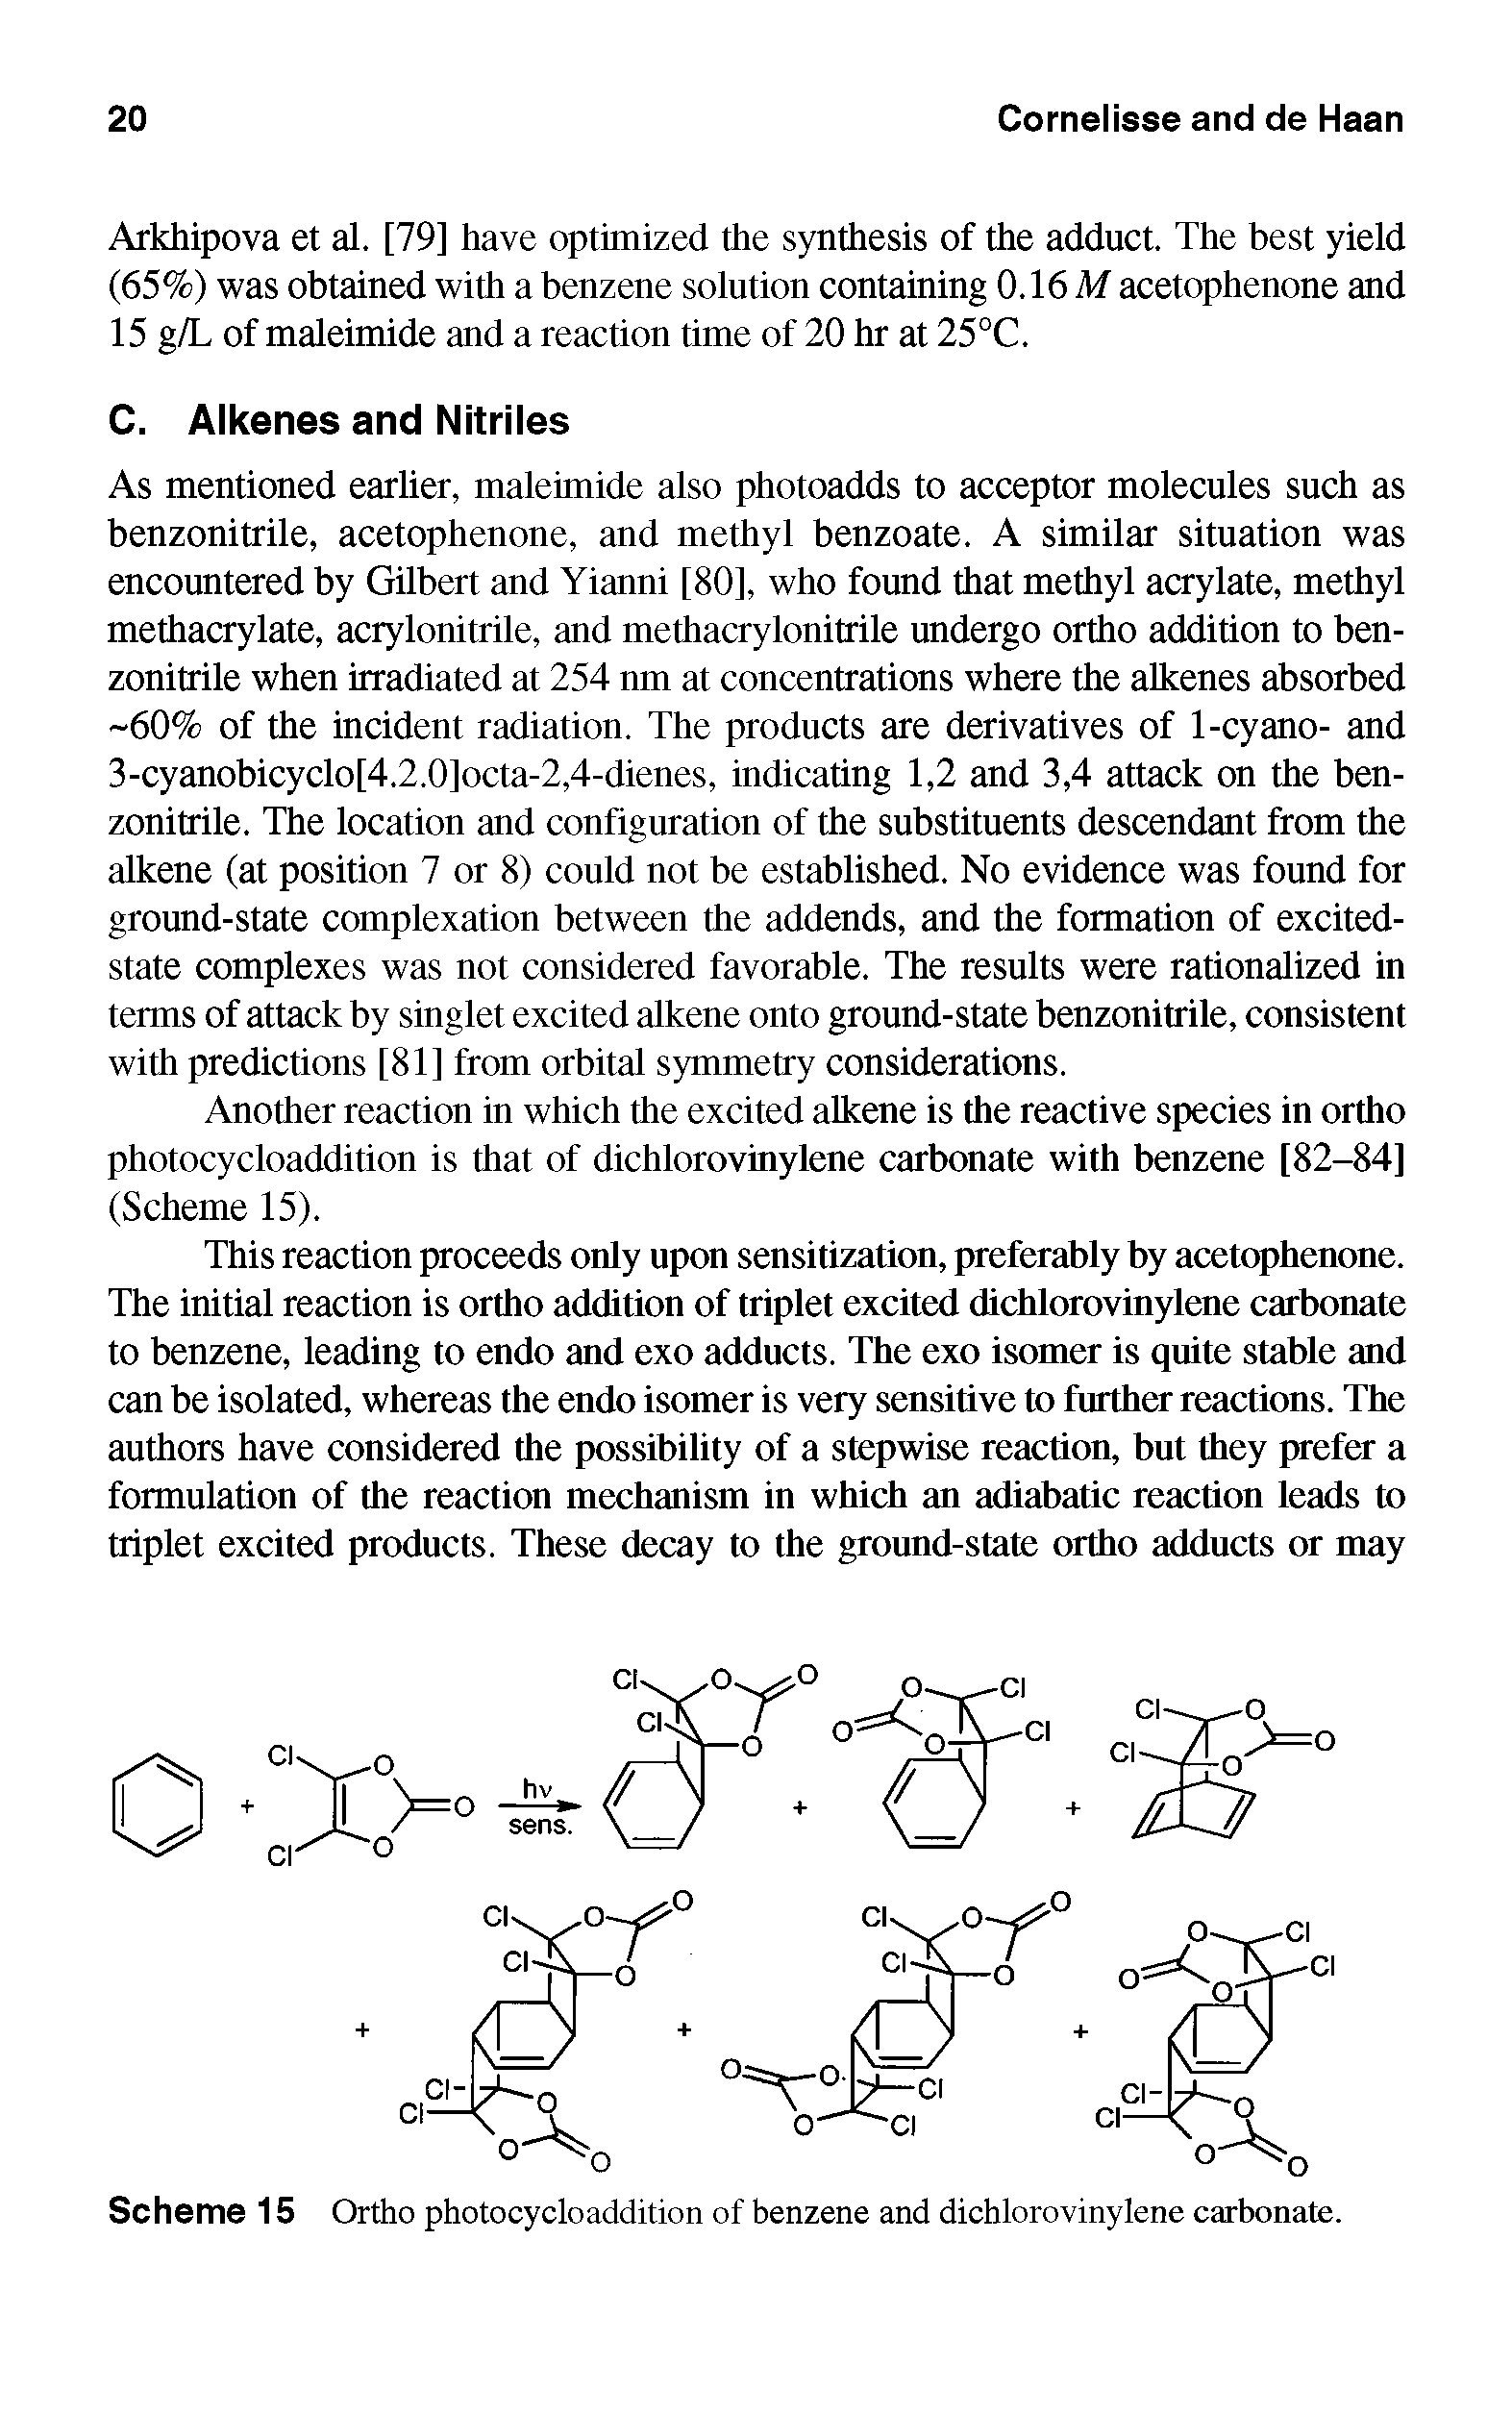 Scheme 15 Ortho photocycloaddition of benzene and dichlorovinylene carbonate.